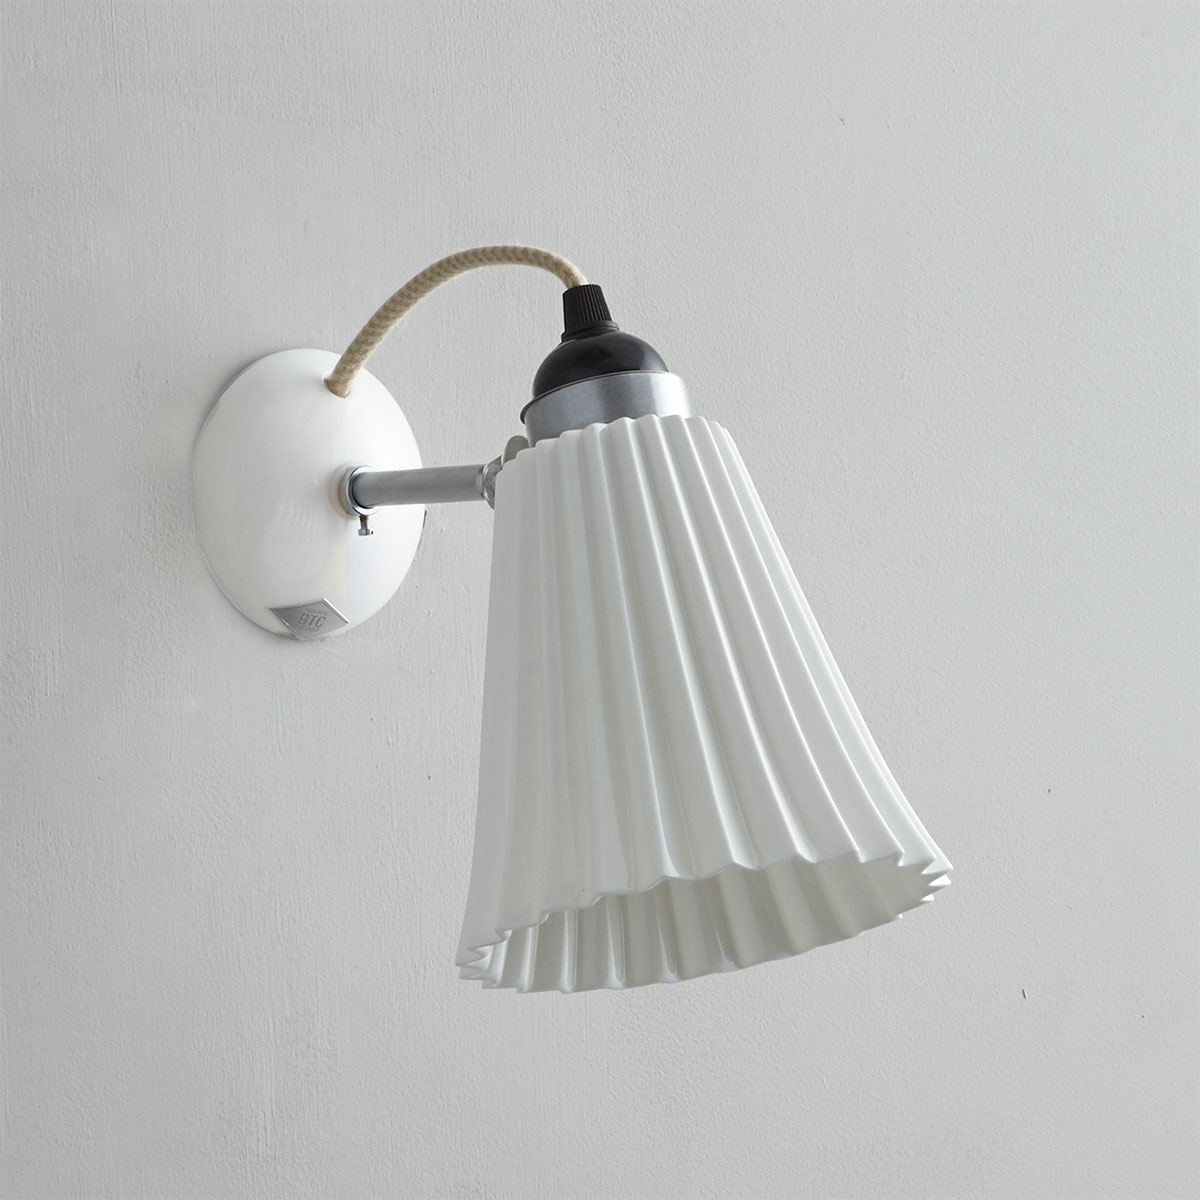 Kleine Wandlampe mit geriffeltem Porzellanschirm: Mittleres Modell in weiß: Eine schöne Wandlampe für das Schlafzimmer